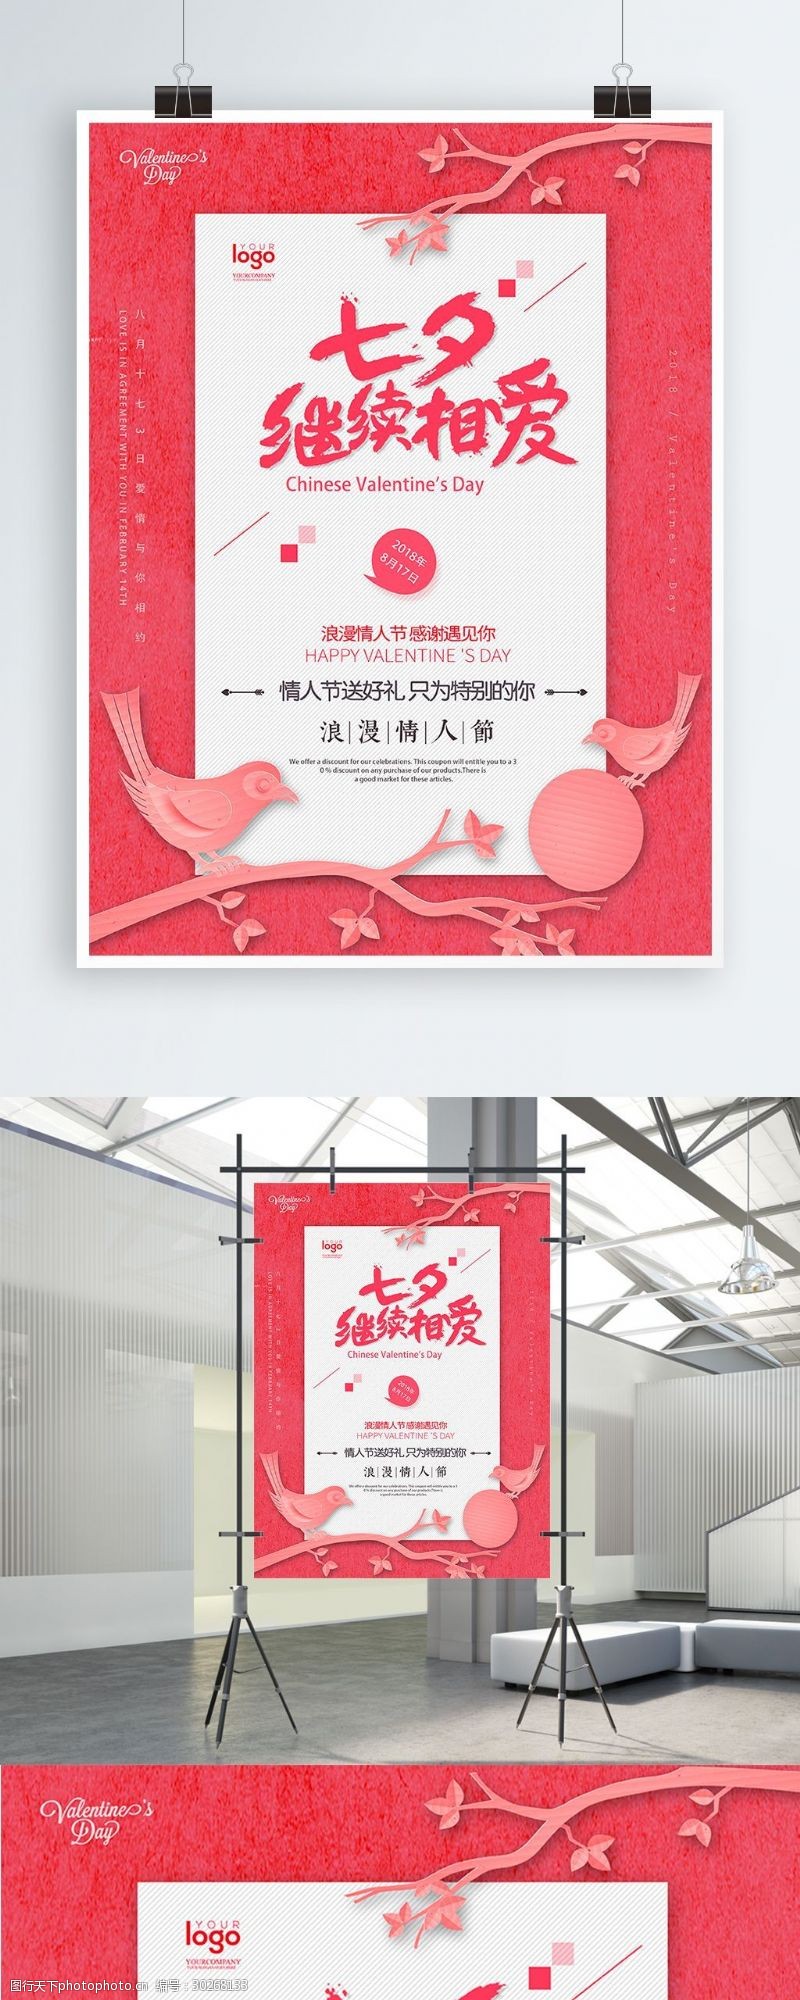 树枝节宣传粉红色成对枝头喜鹊浪漫七夕节日海报设计